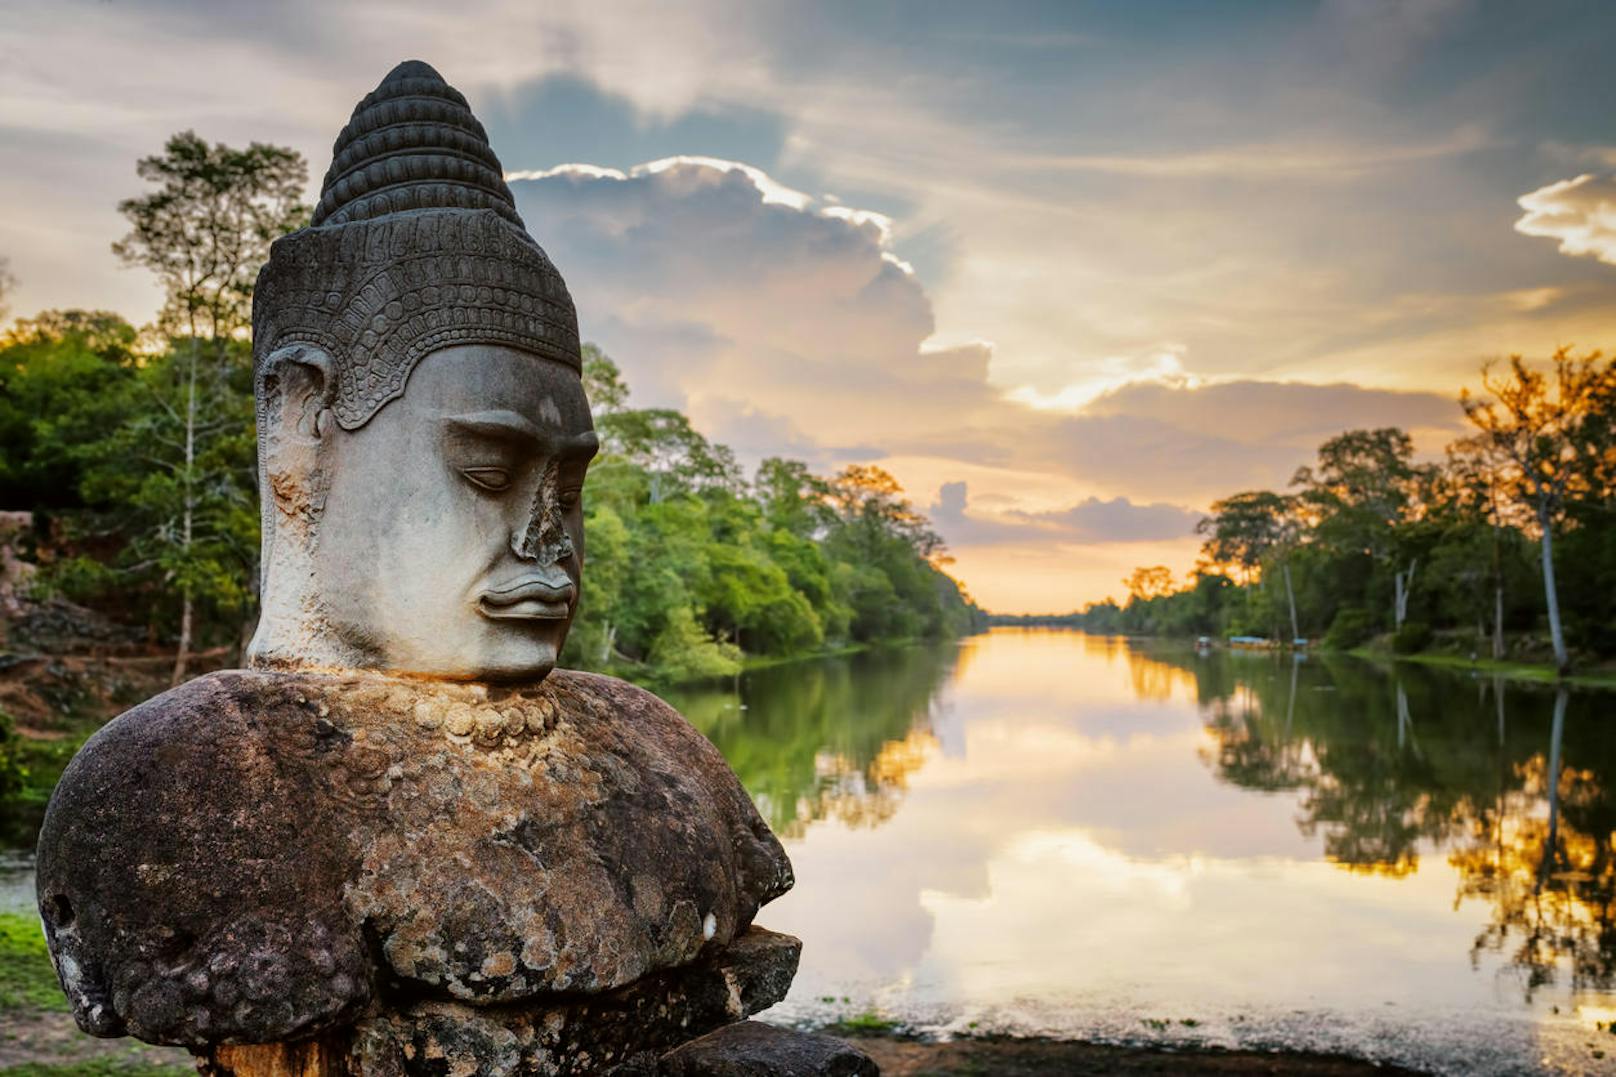 Abgesehen von der wunderschönen, überwucherten Tempelstadt Angkor Wat ist <b>Kambodscha</b> das günstigste Reiseland in Südostasien, aber auch eines der ärmsten. Deshalb sind auch die Reisemöglichkeiten innerhalb des Landes nicht unbedingt verlässlich, aber wenn ihr euch traut, belohnt euch Kambodscha mit einzigartigen Ecken, einsamen Stränden und dem berühmten Straßenessen in der Hauptstadt Phnom Penh.